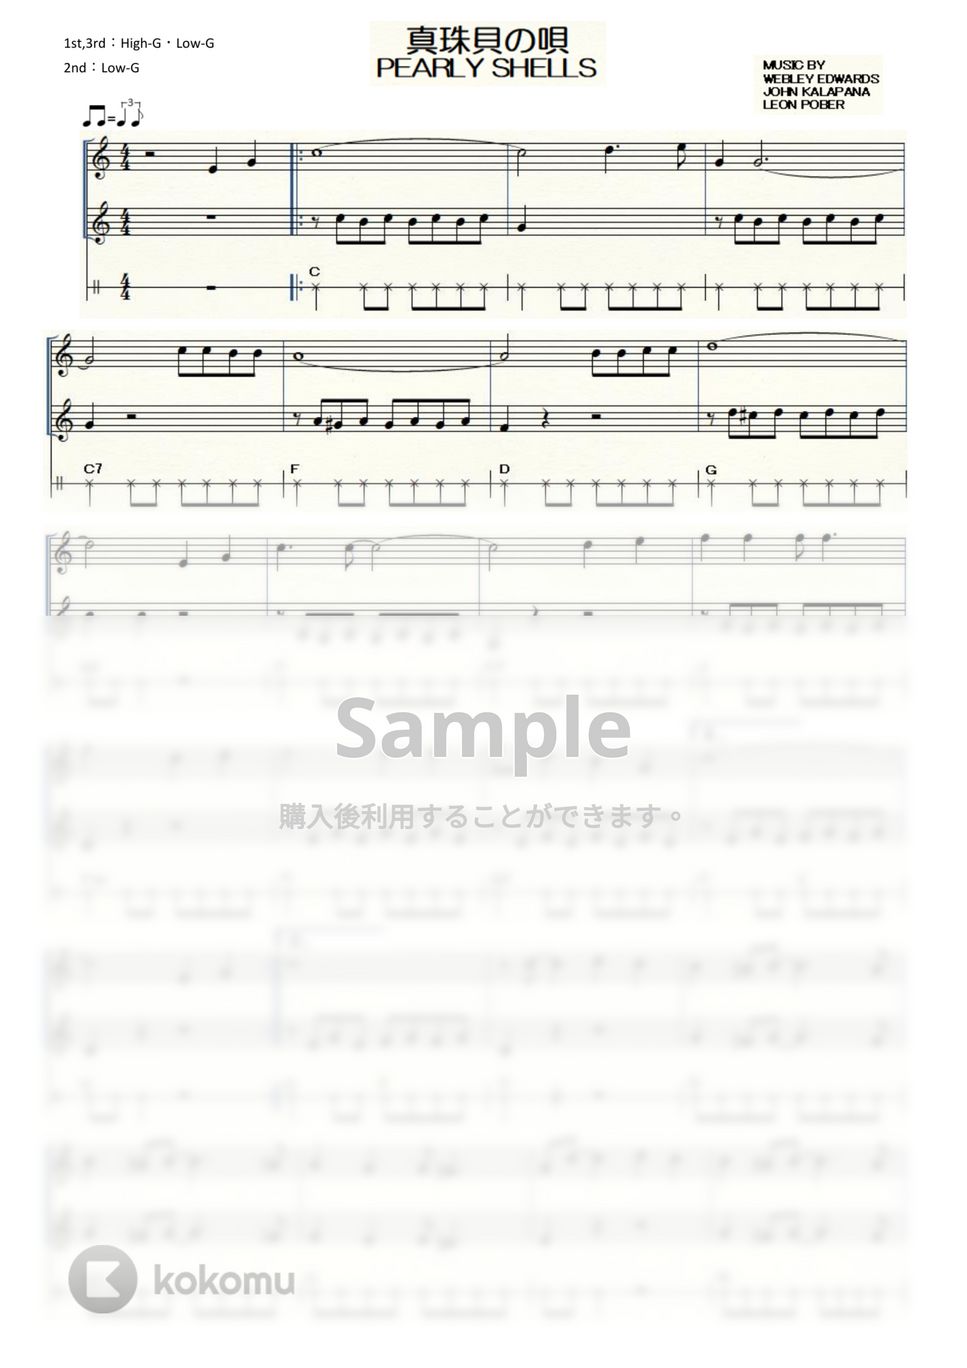 ハワイアン - 真珠貝の唄～PEARLY SHELLS～ (ｳｸﾚﾚ三重奏 / High-G・Low-G / 中級) by ukulelepapa